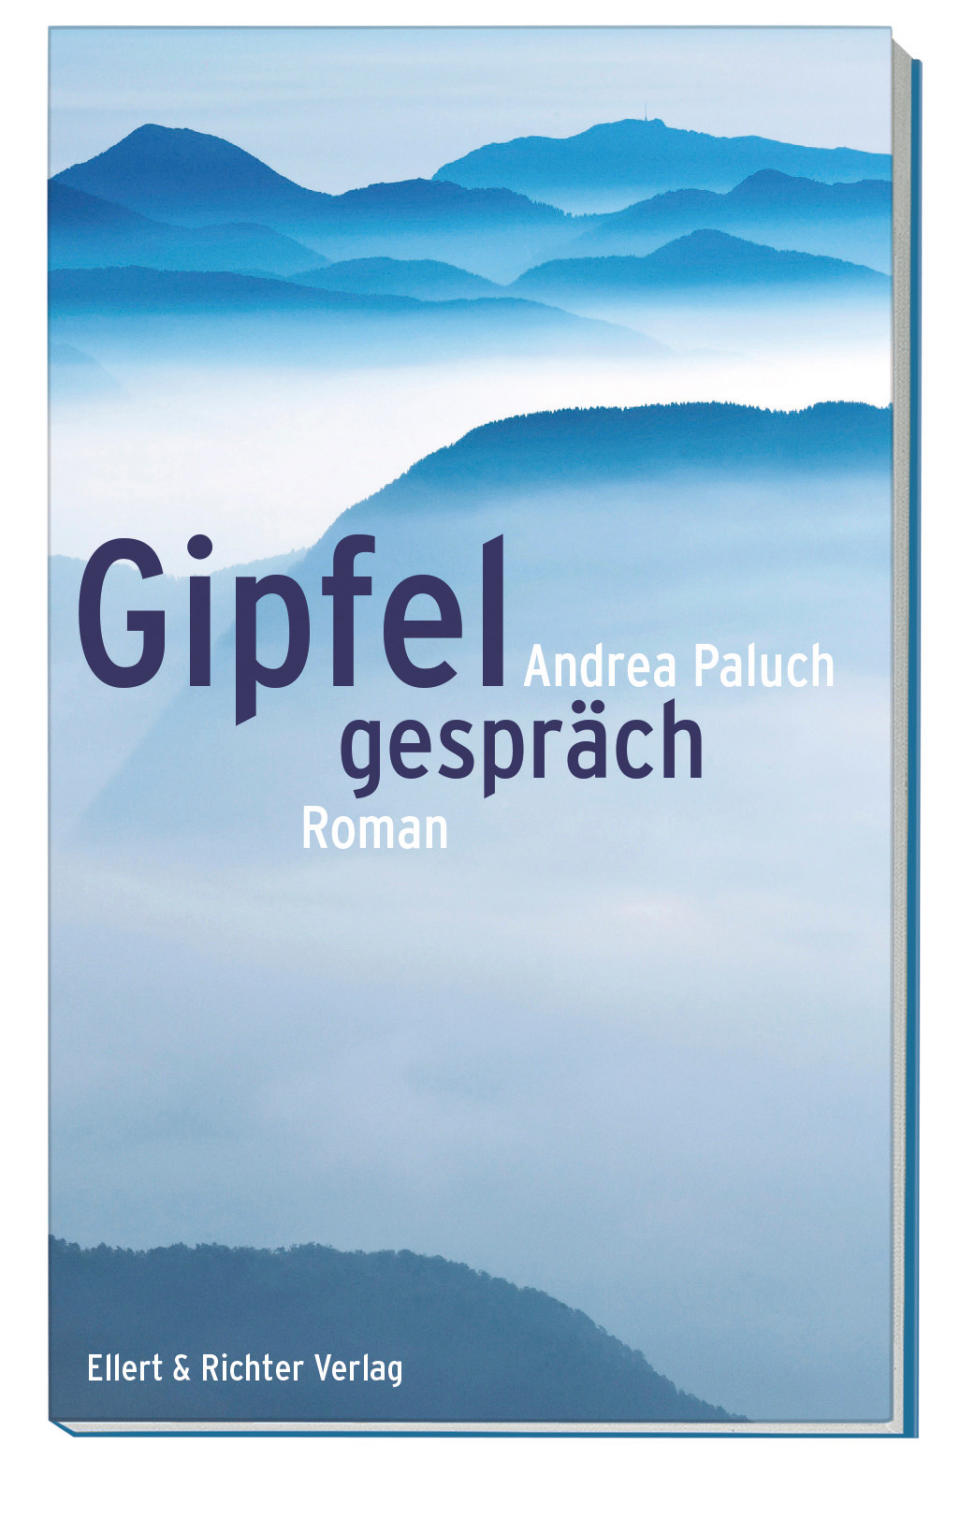 Gipfelgespräch, Roman von Andrea Paluch, Ellert & Richter Verlag, ISBN
978-3-8319-0773-1